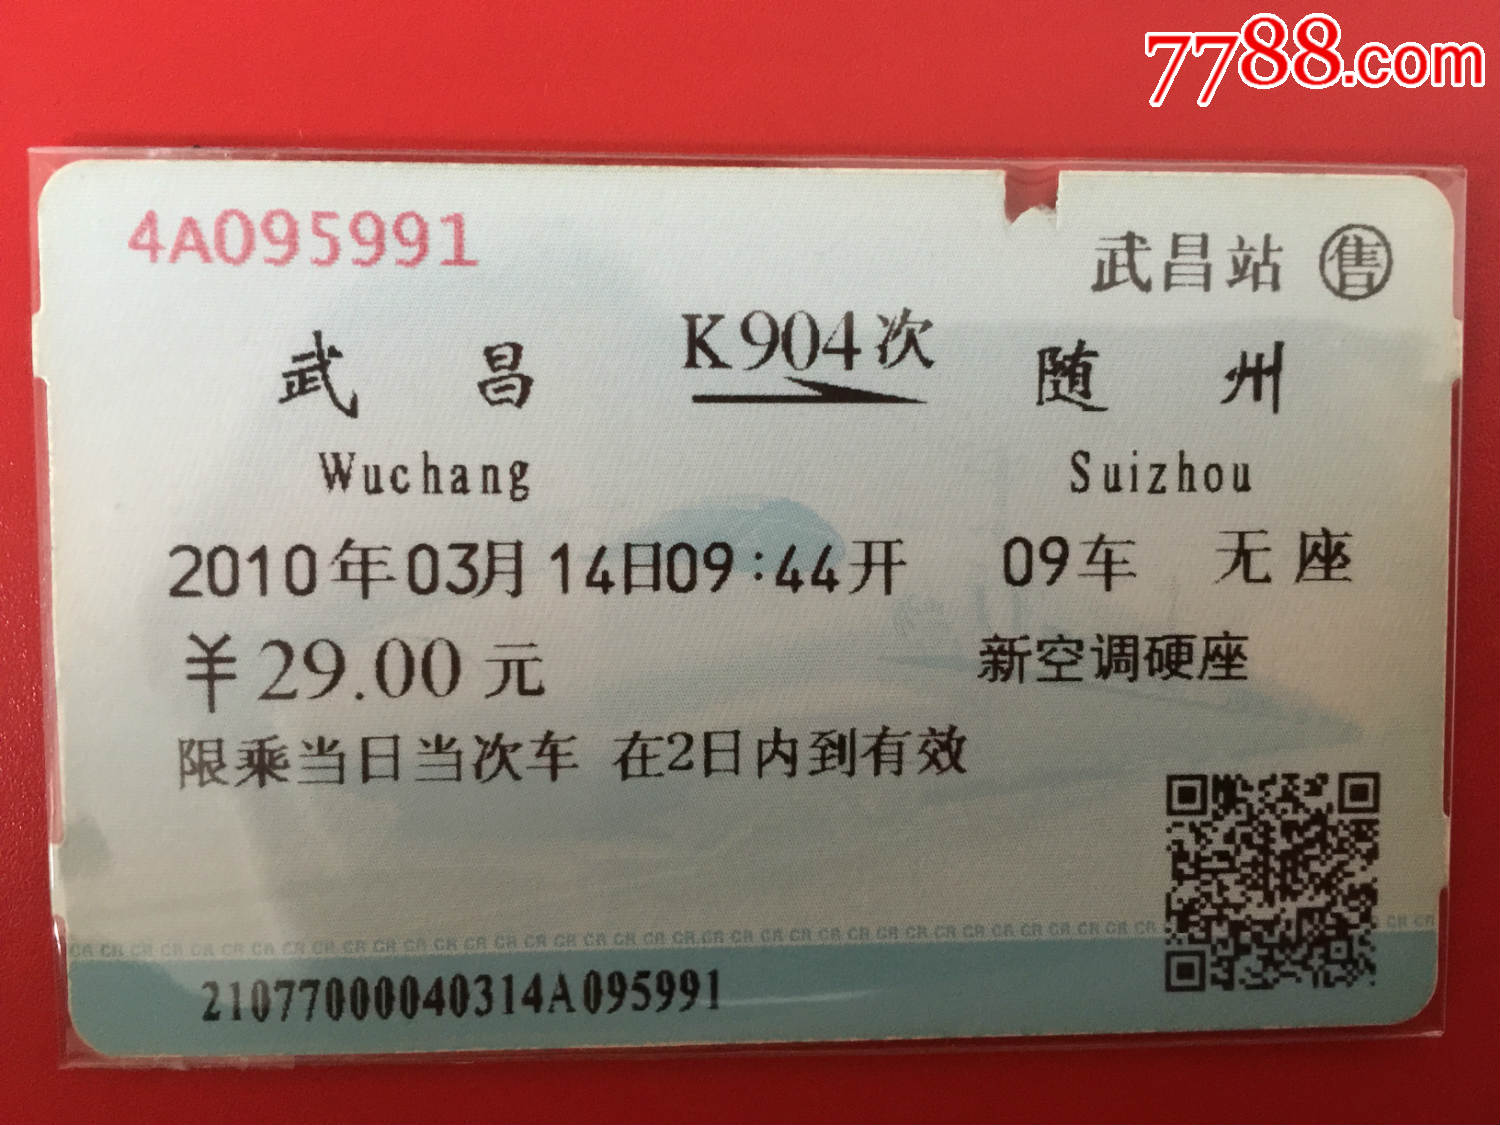 火车票:新空调硬座-K904次,武昌到随州,